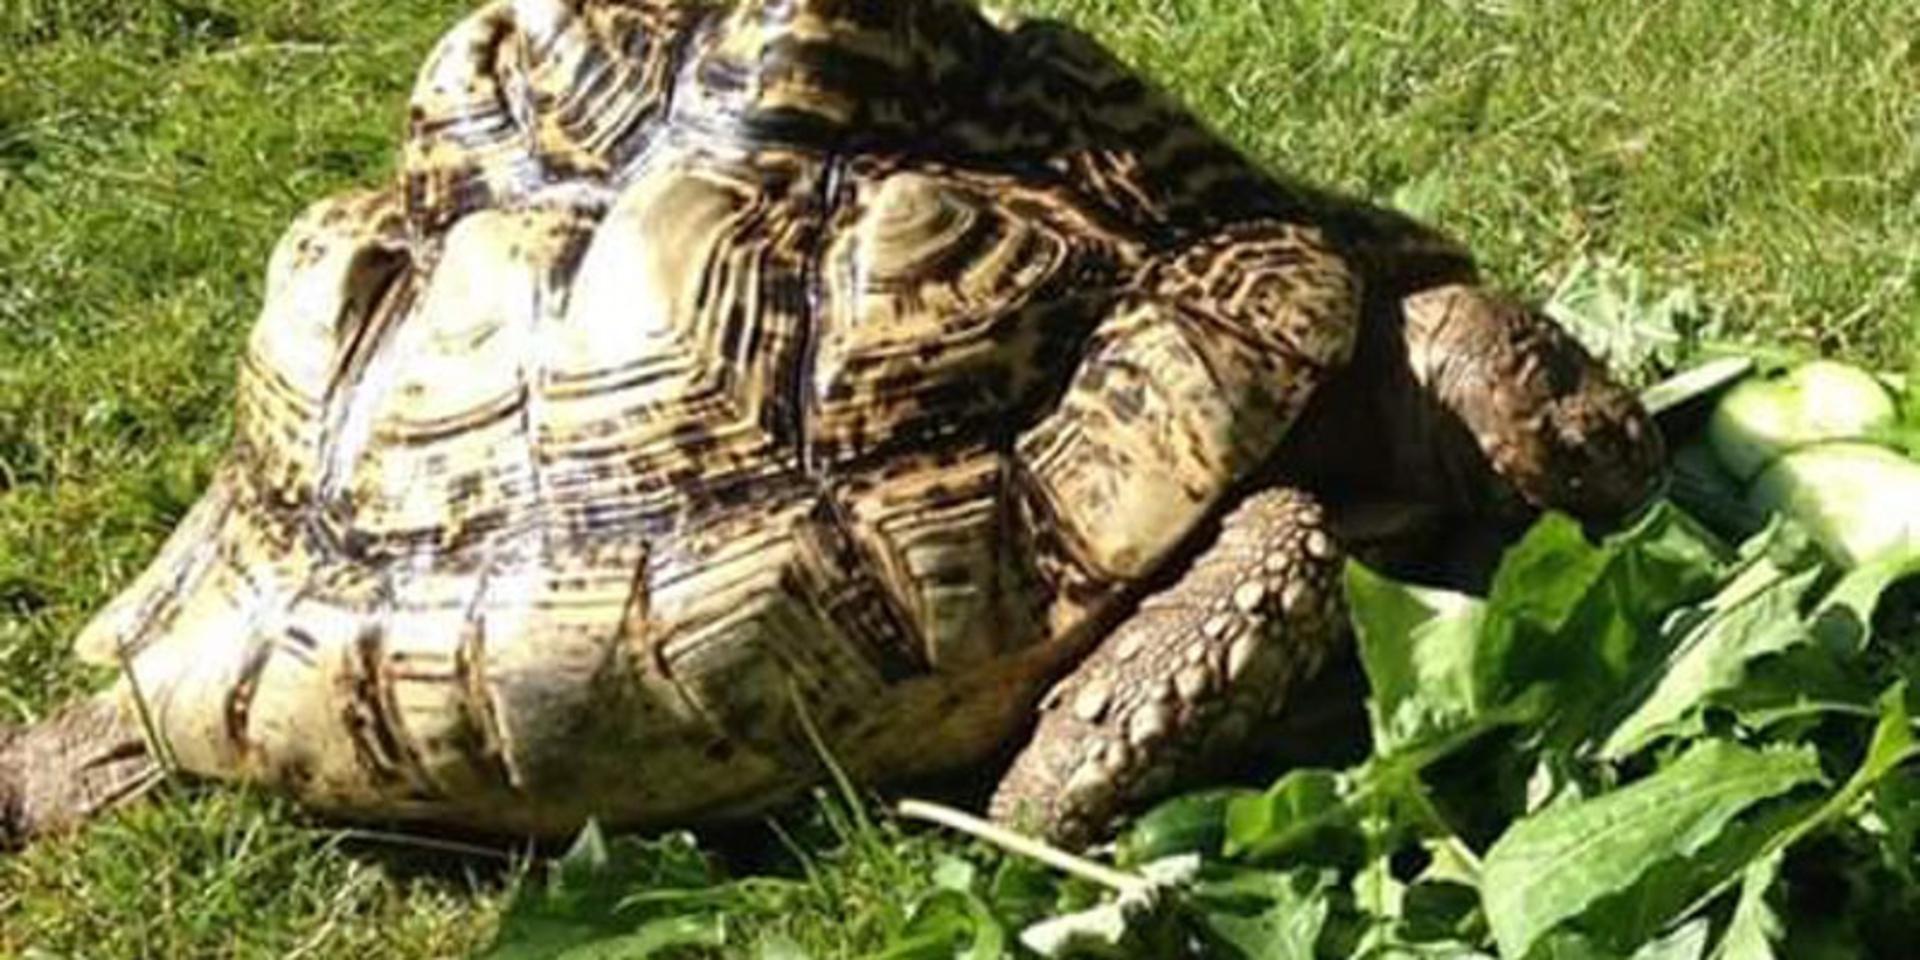 Sköldpaddan Bobbi är hemma i säkerhet igen.